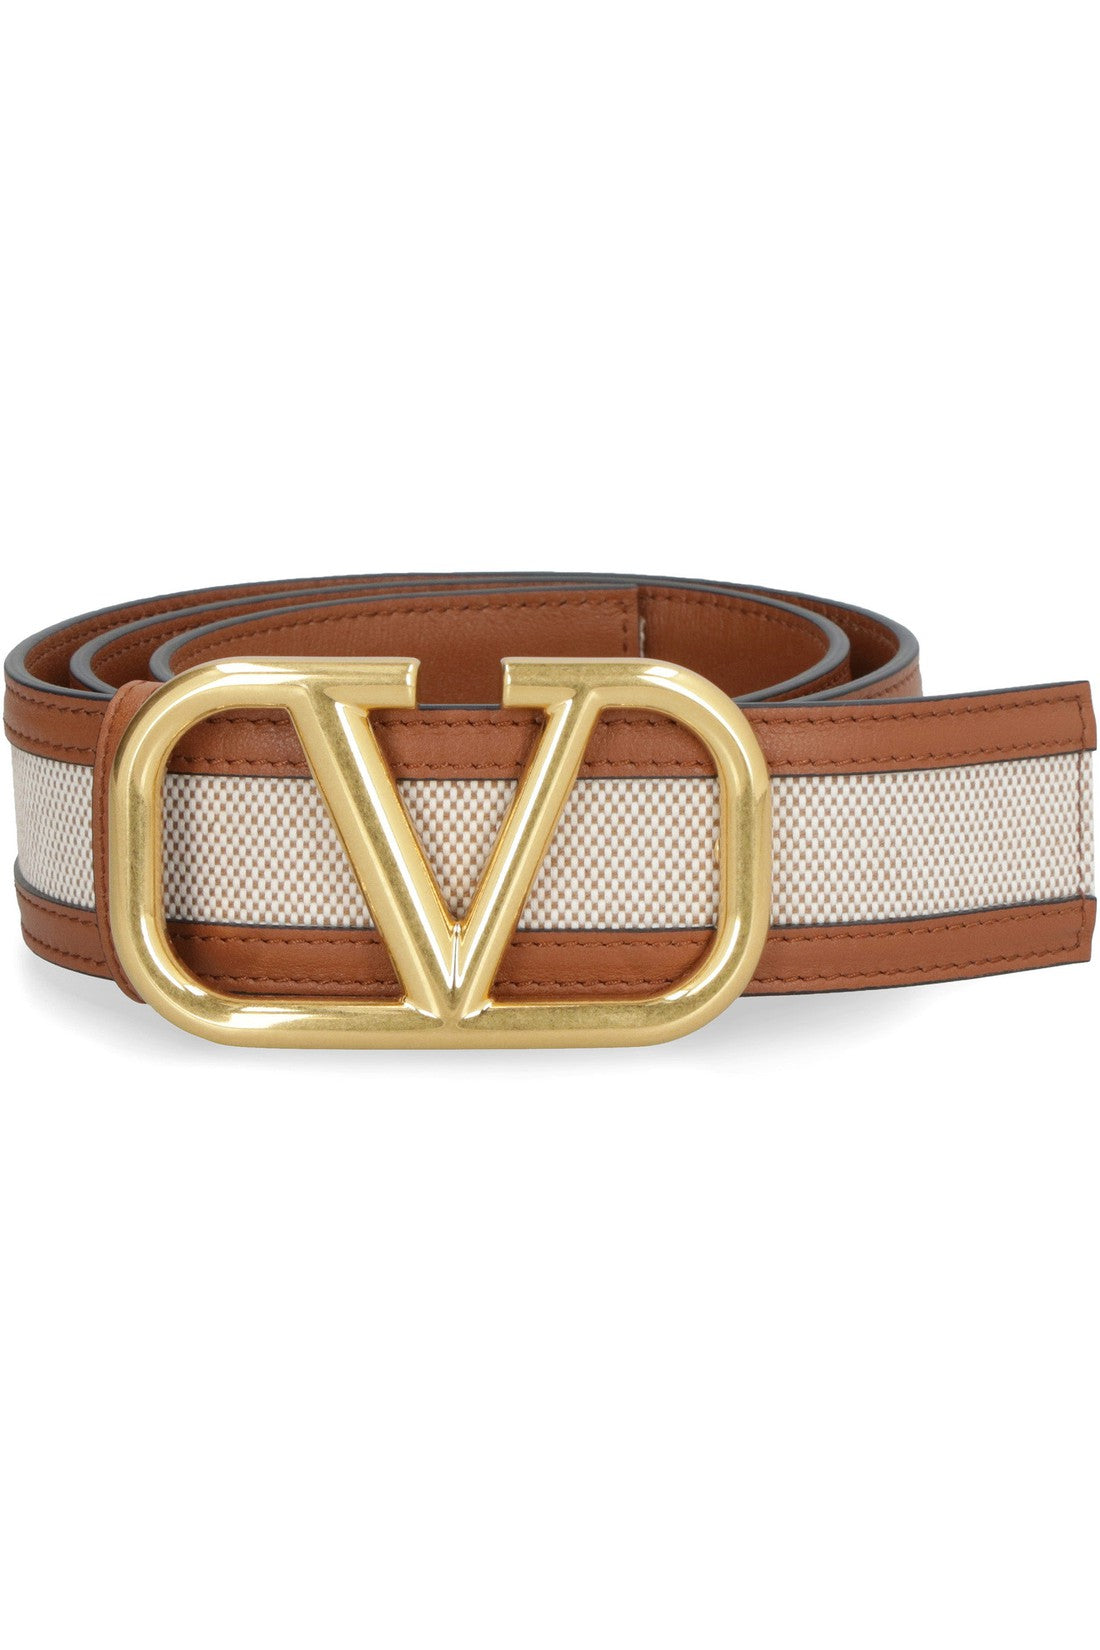 Valentino-OUTLET-SALE-Valentino Garavani - Canvas belt-ARCHIVIST